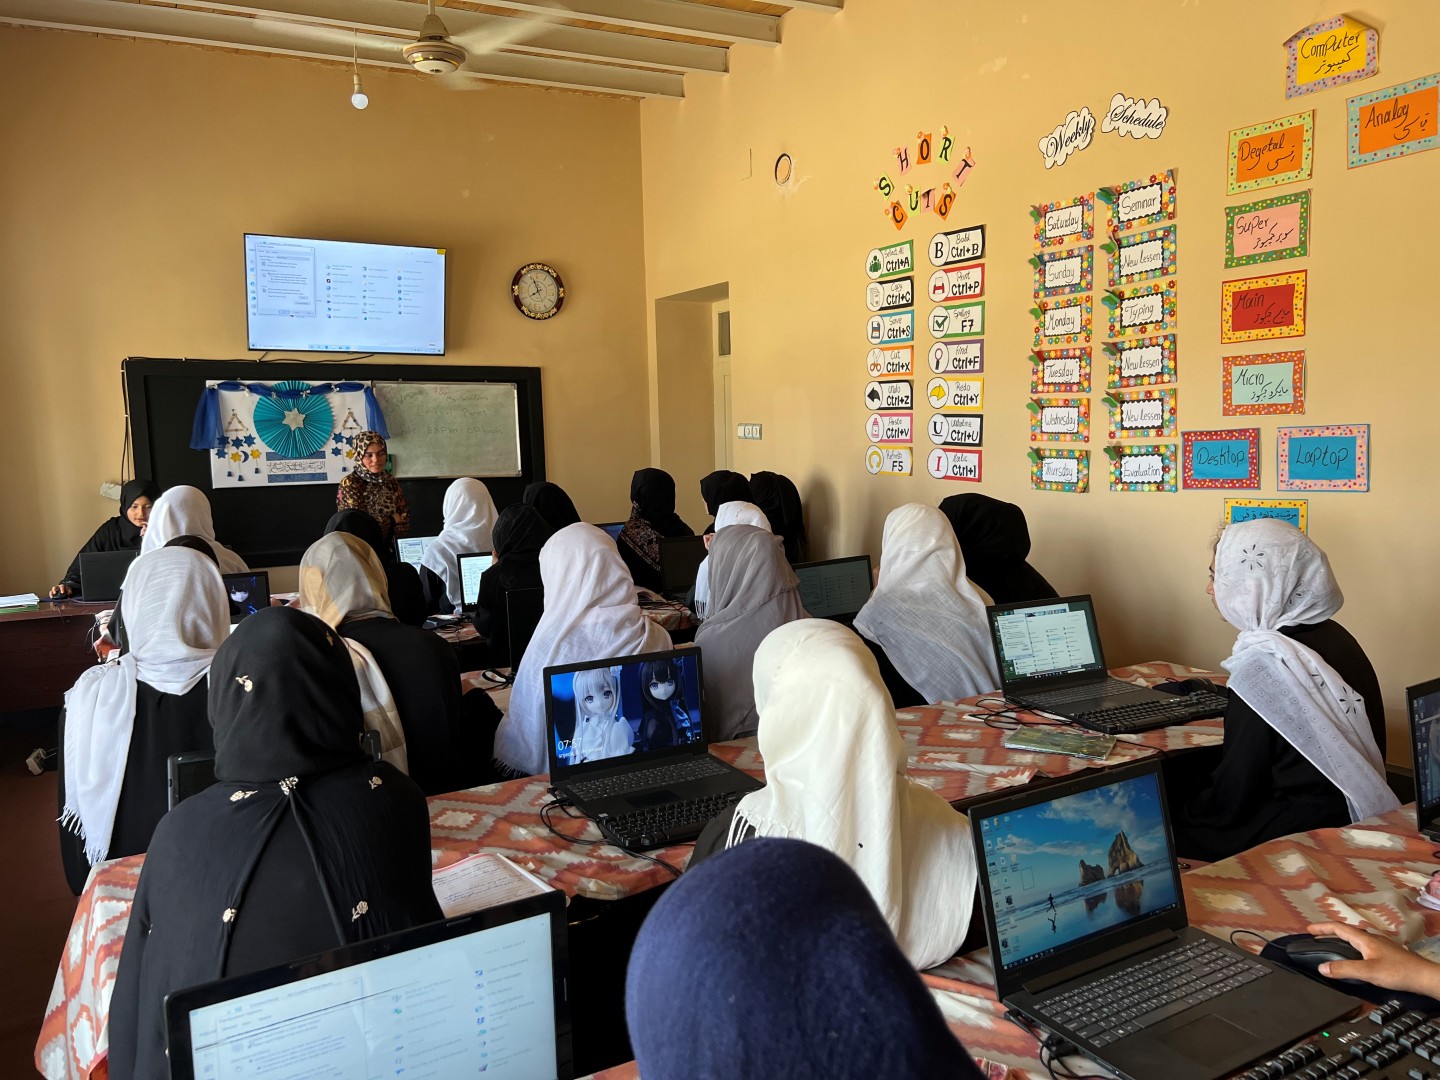 Klassenraum in Afghanistan